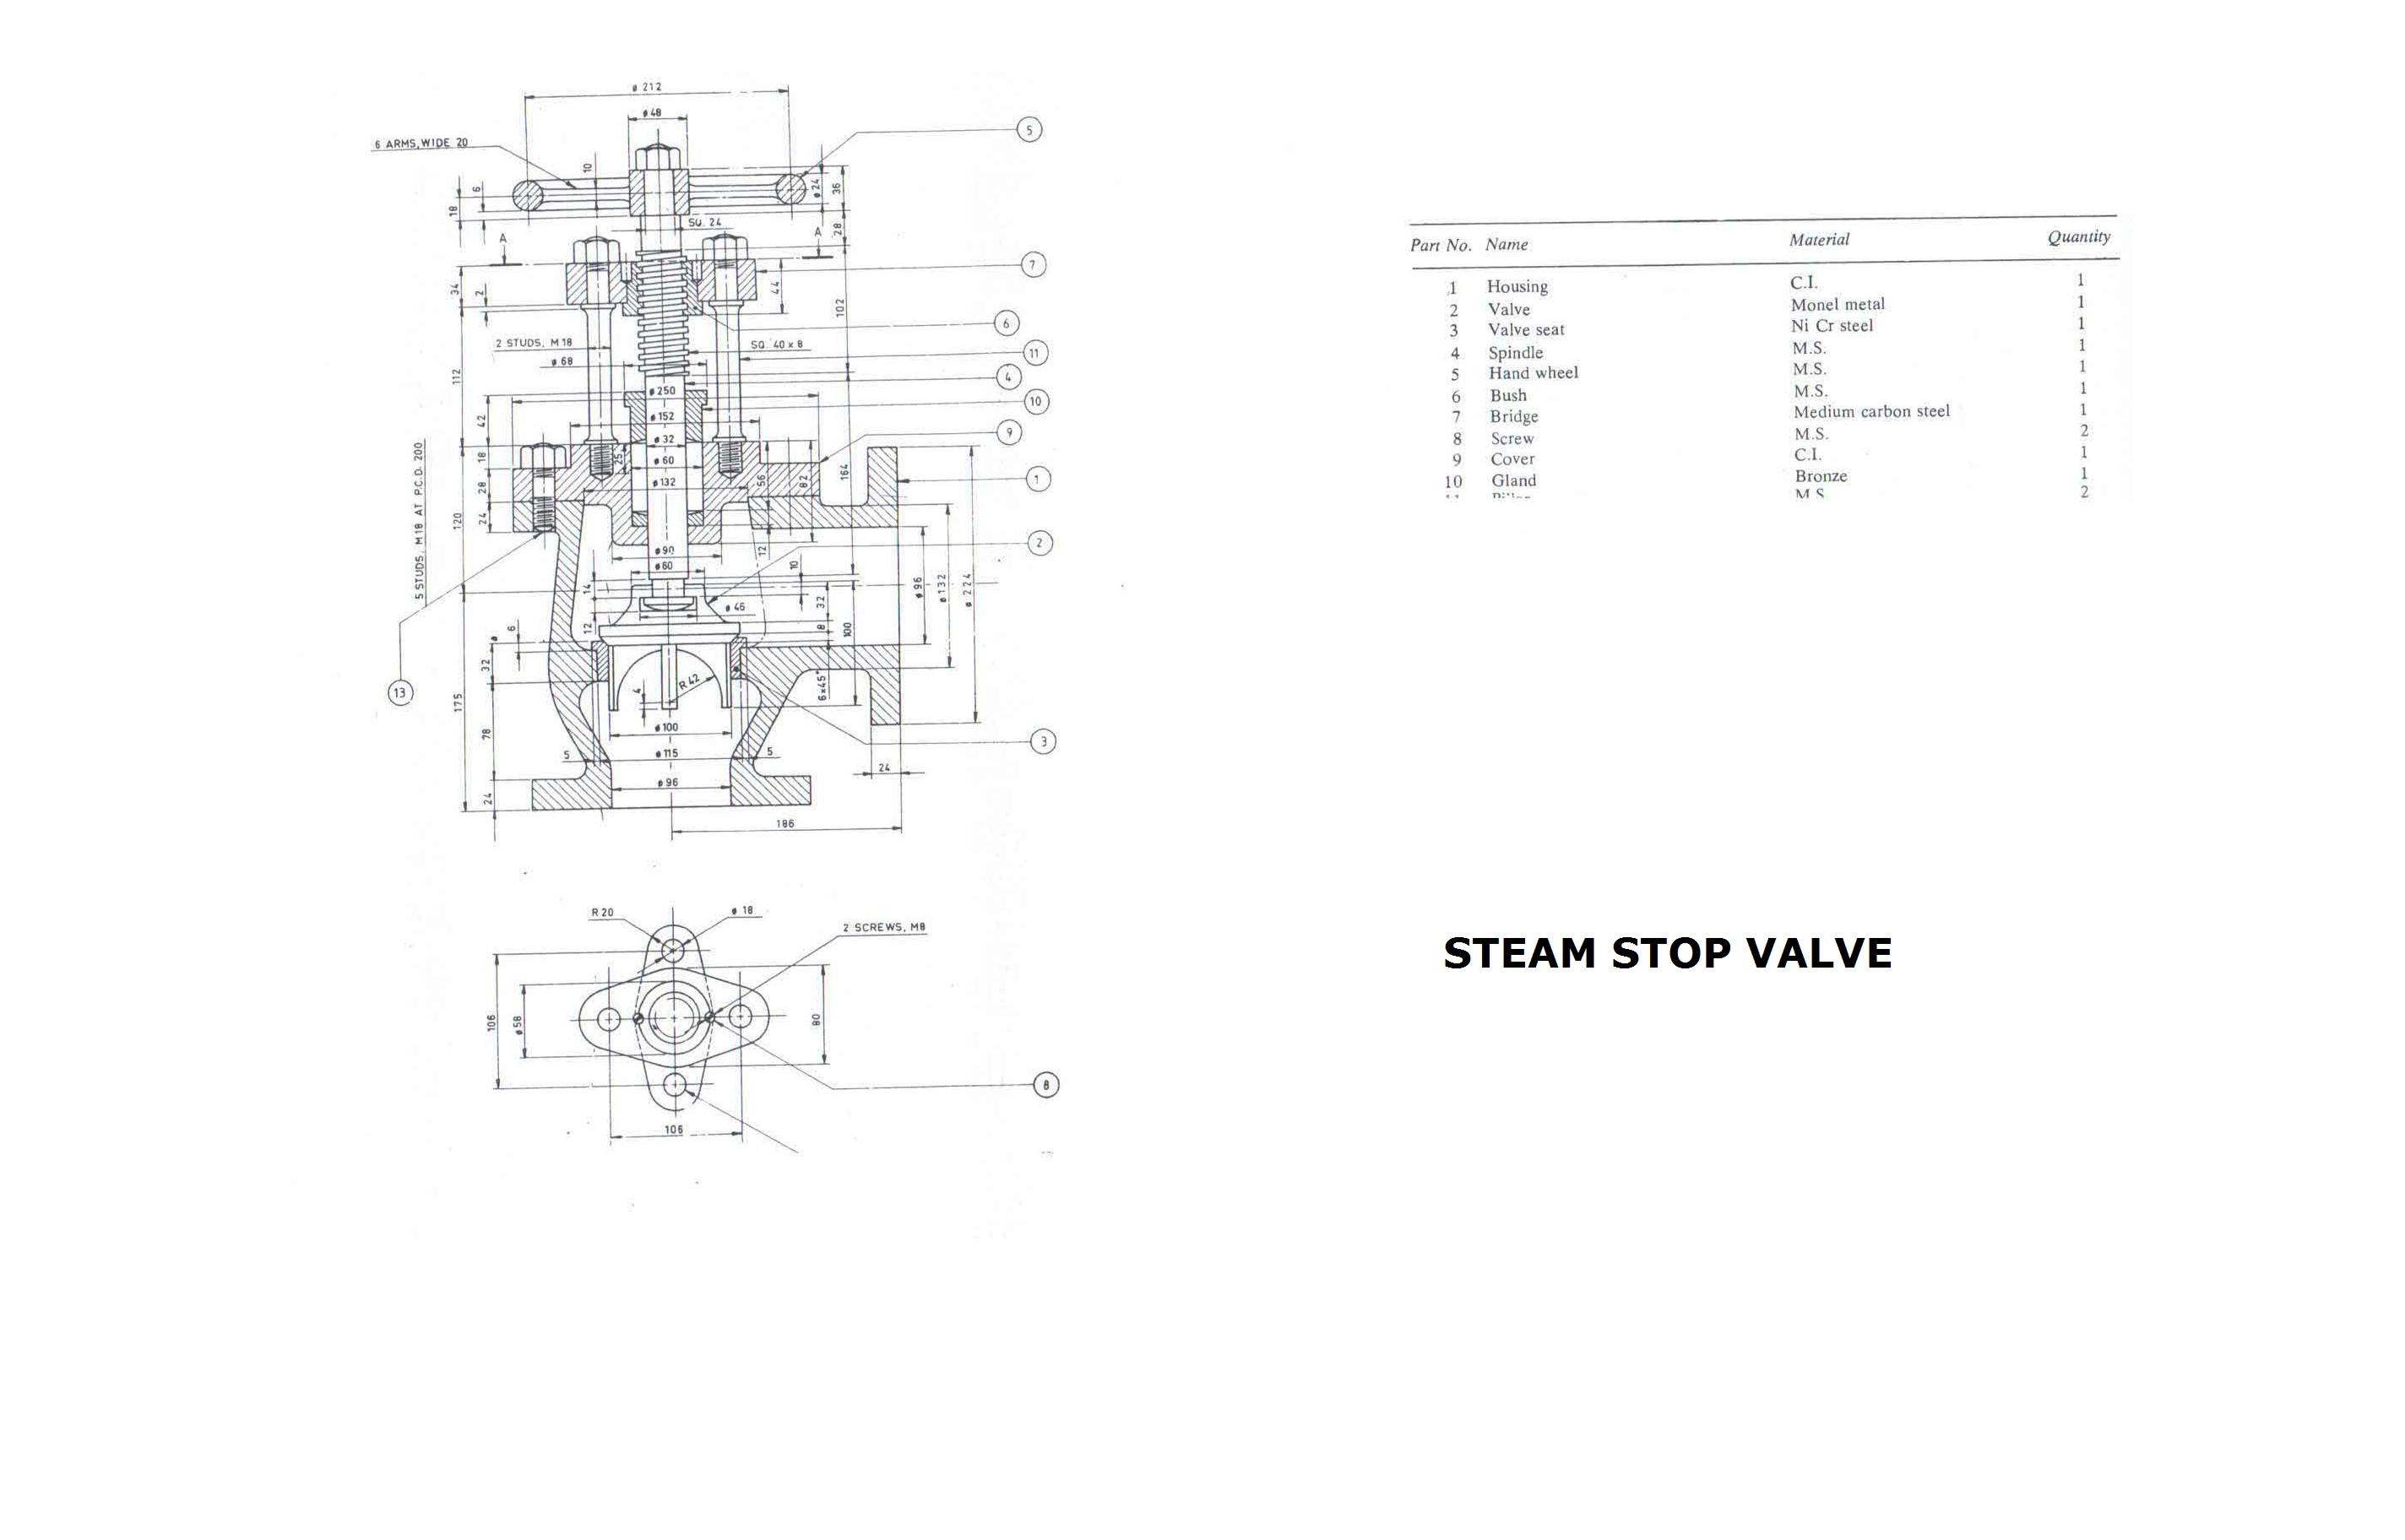 Steam stop valve design-STEAM STOP VALVE.jpg